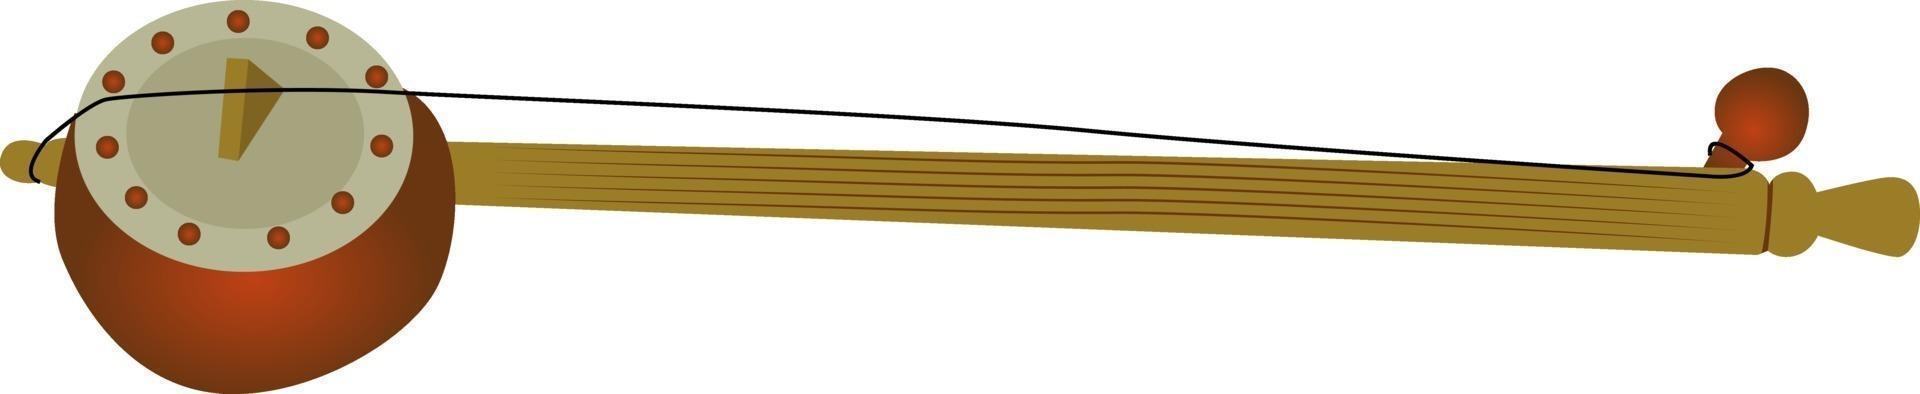 Tumbi-Instrument, Illustration, Vektor auf weißem Hintergrund.